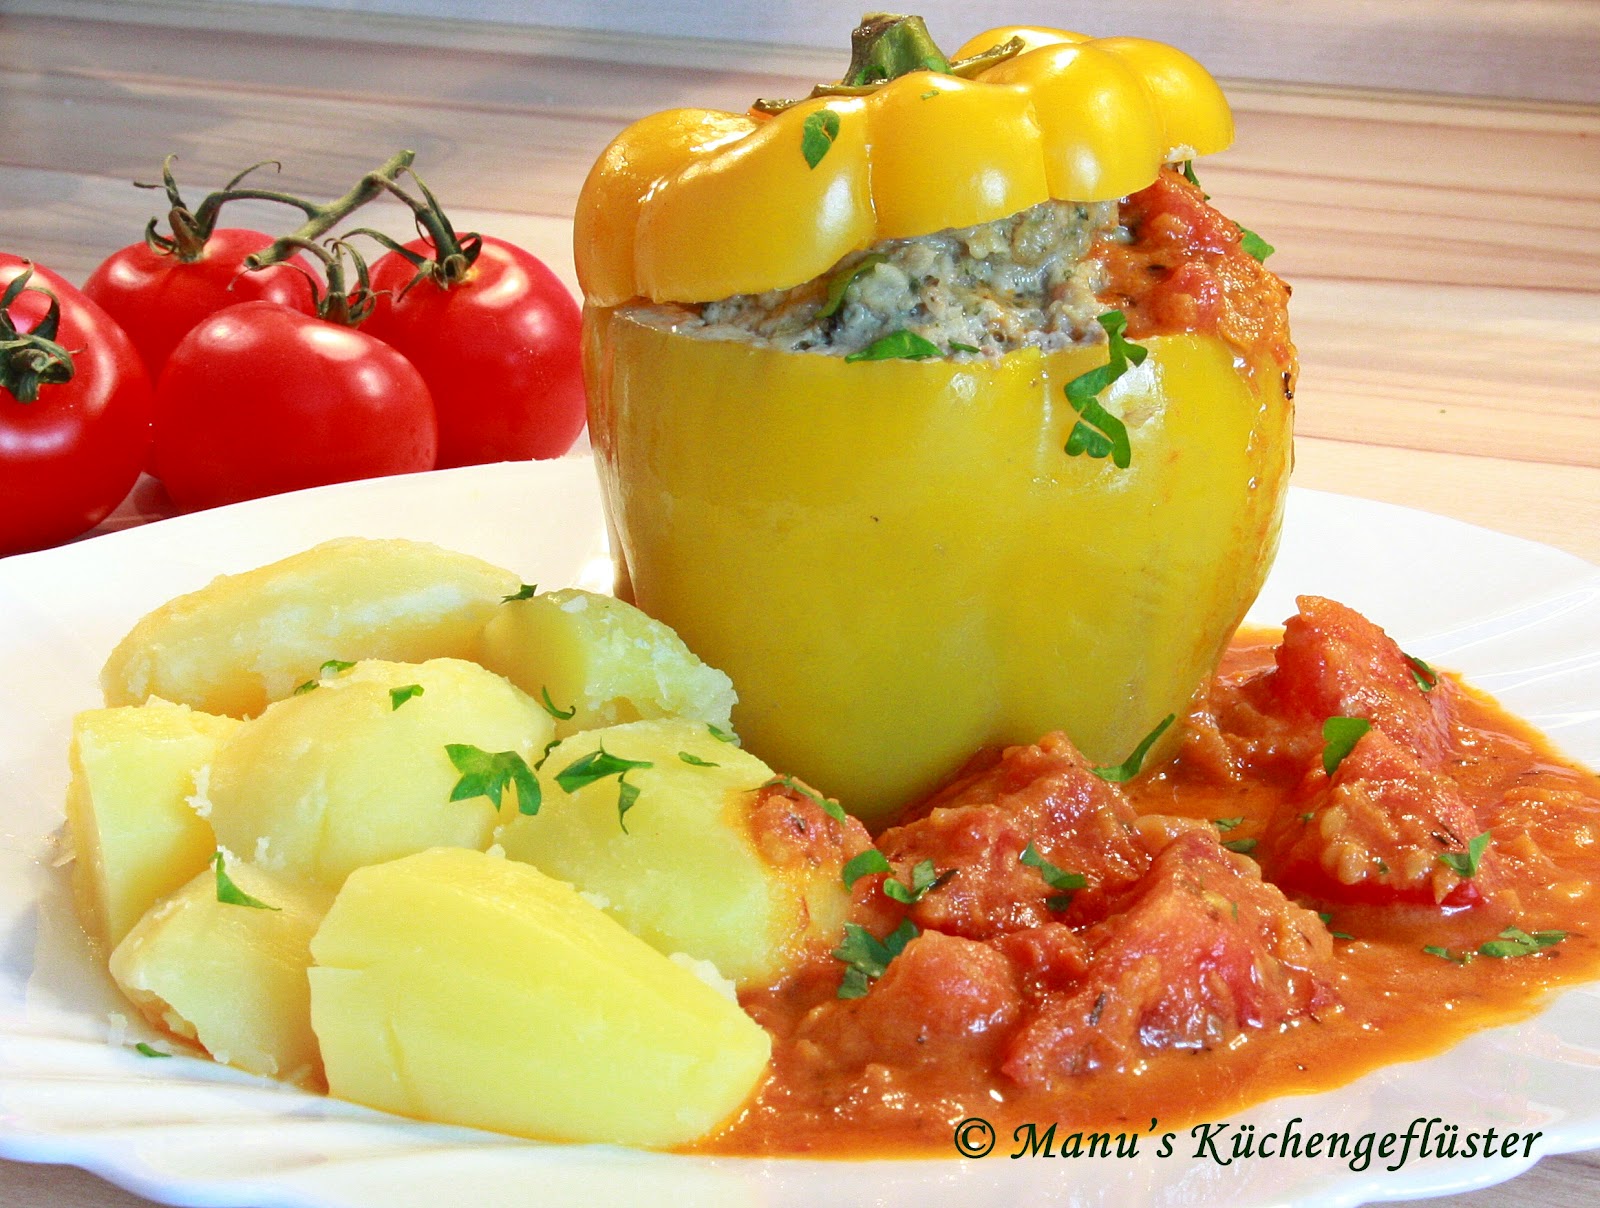 Manus Küchengeflüster: gefüllte Paprika mit Tomatenrahm